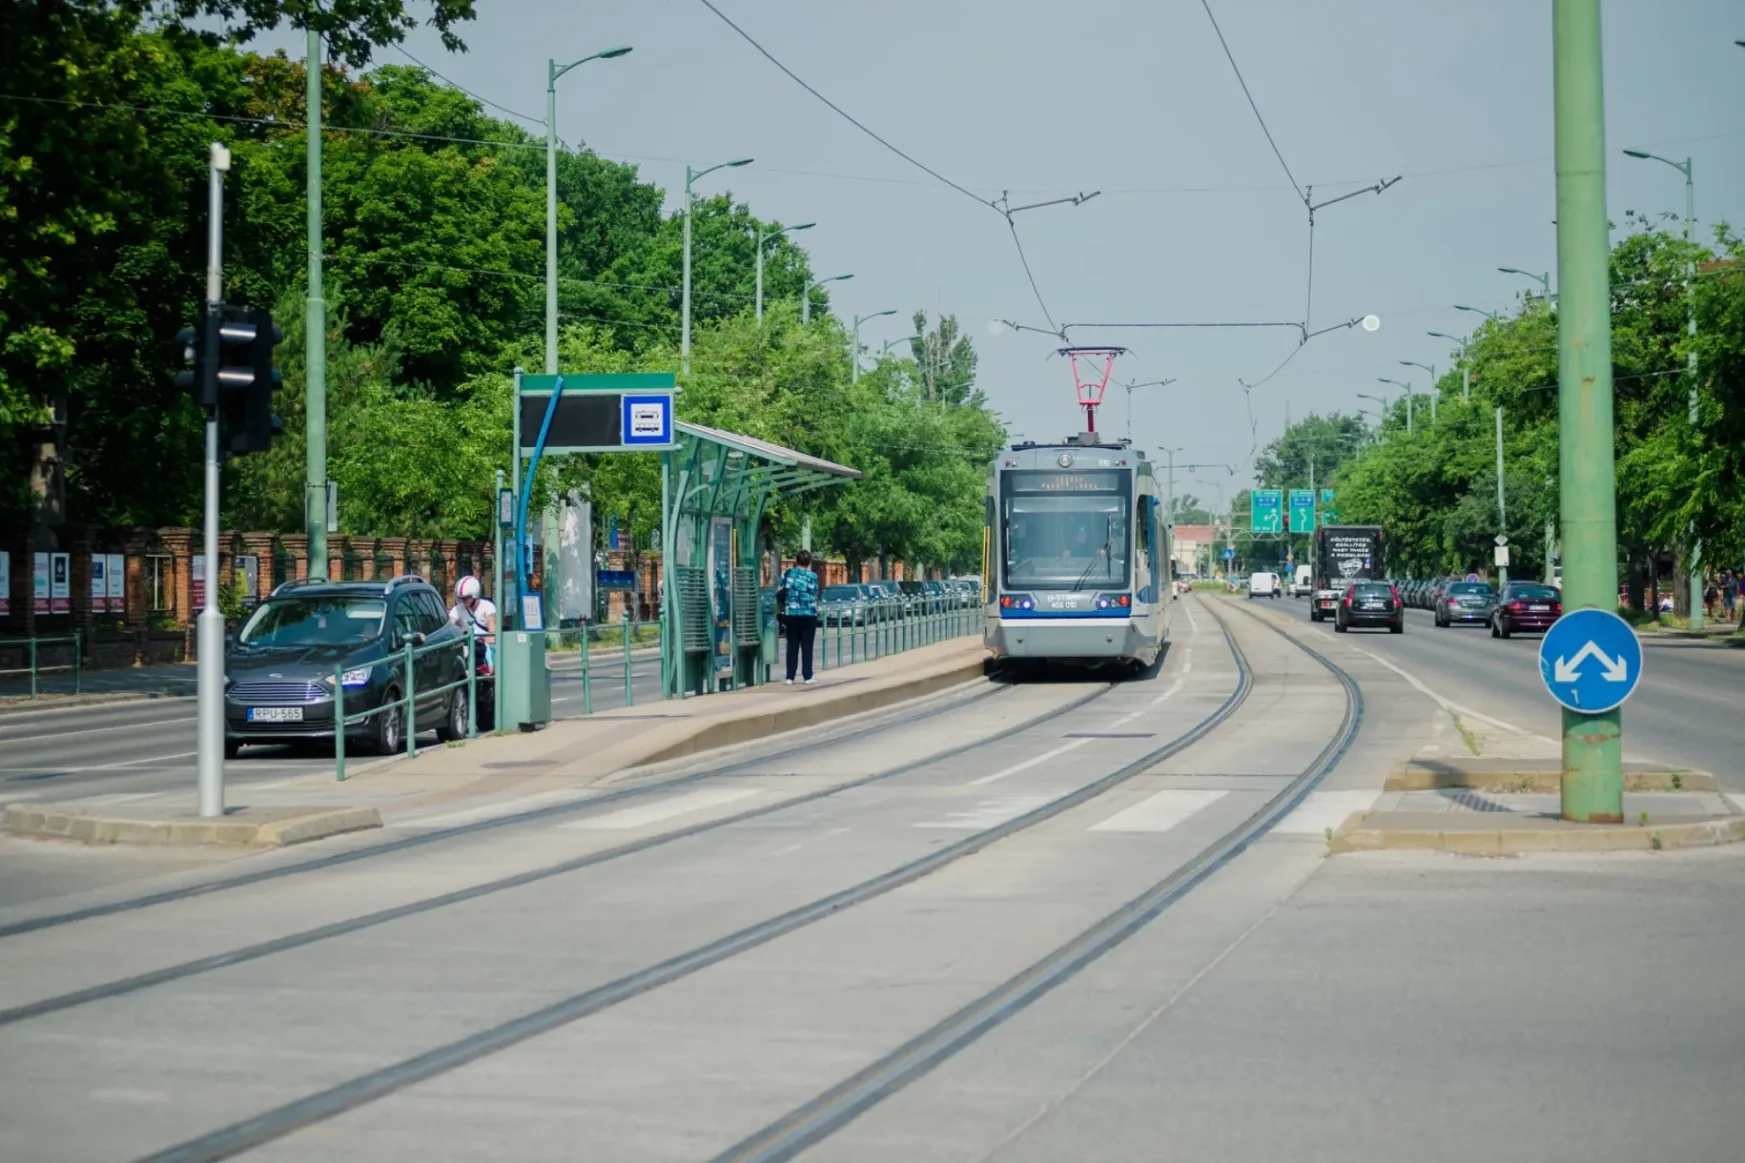 A tram-traineket gyártó cég mérnökének autójába csapódott bele egy tram-train Szegeden